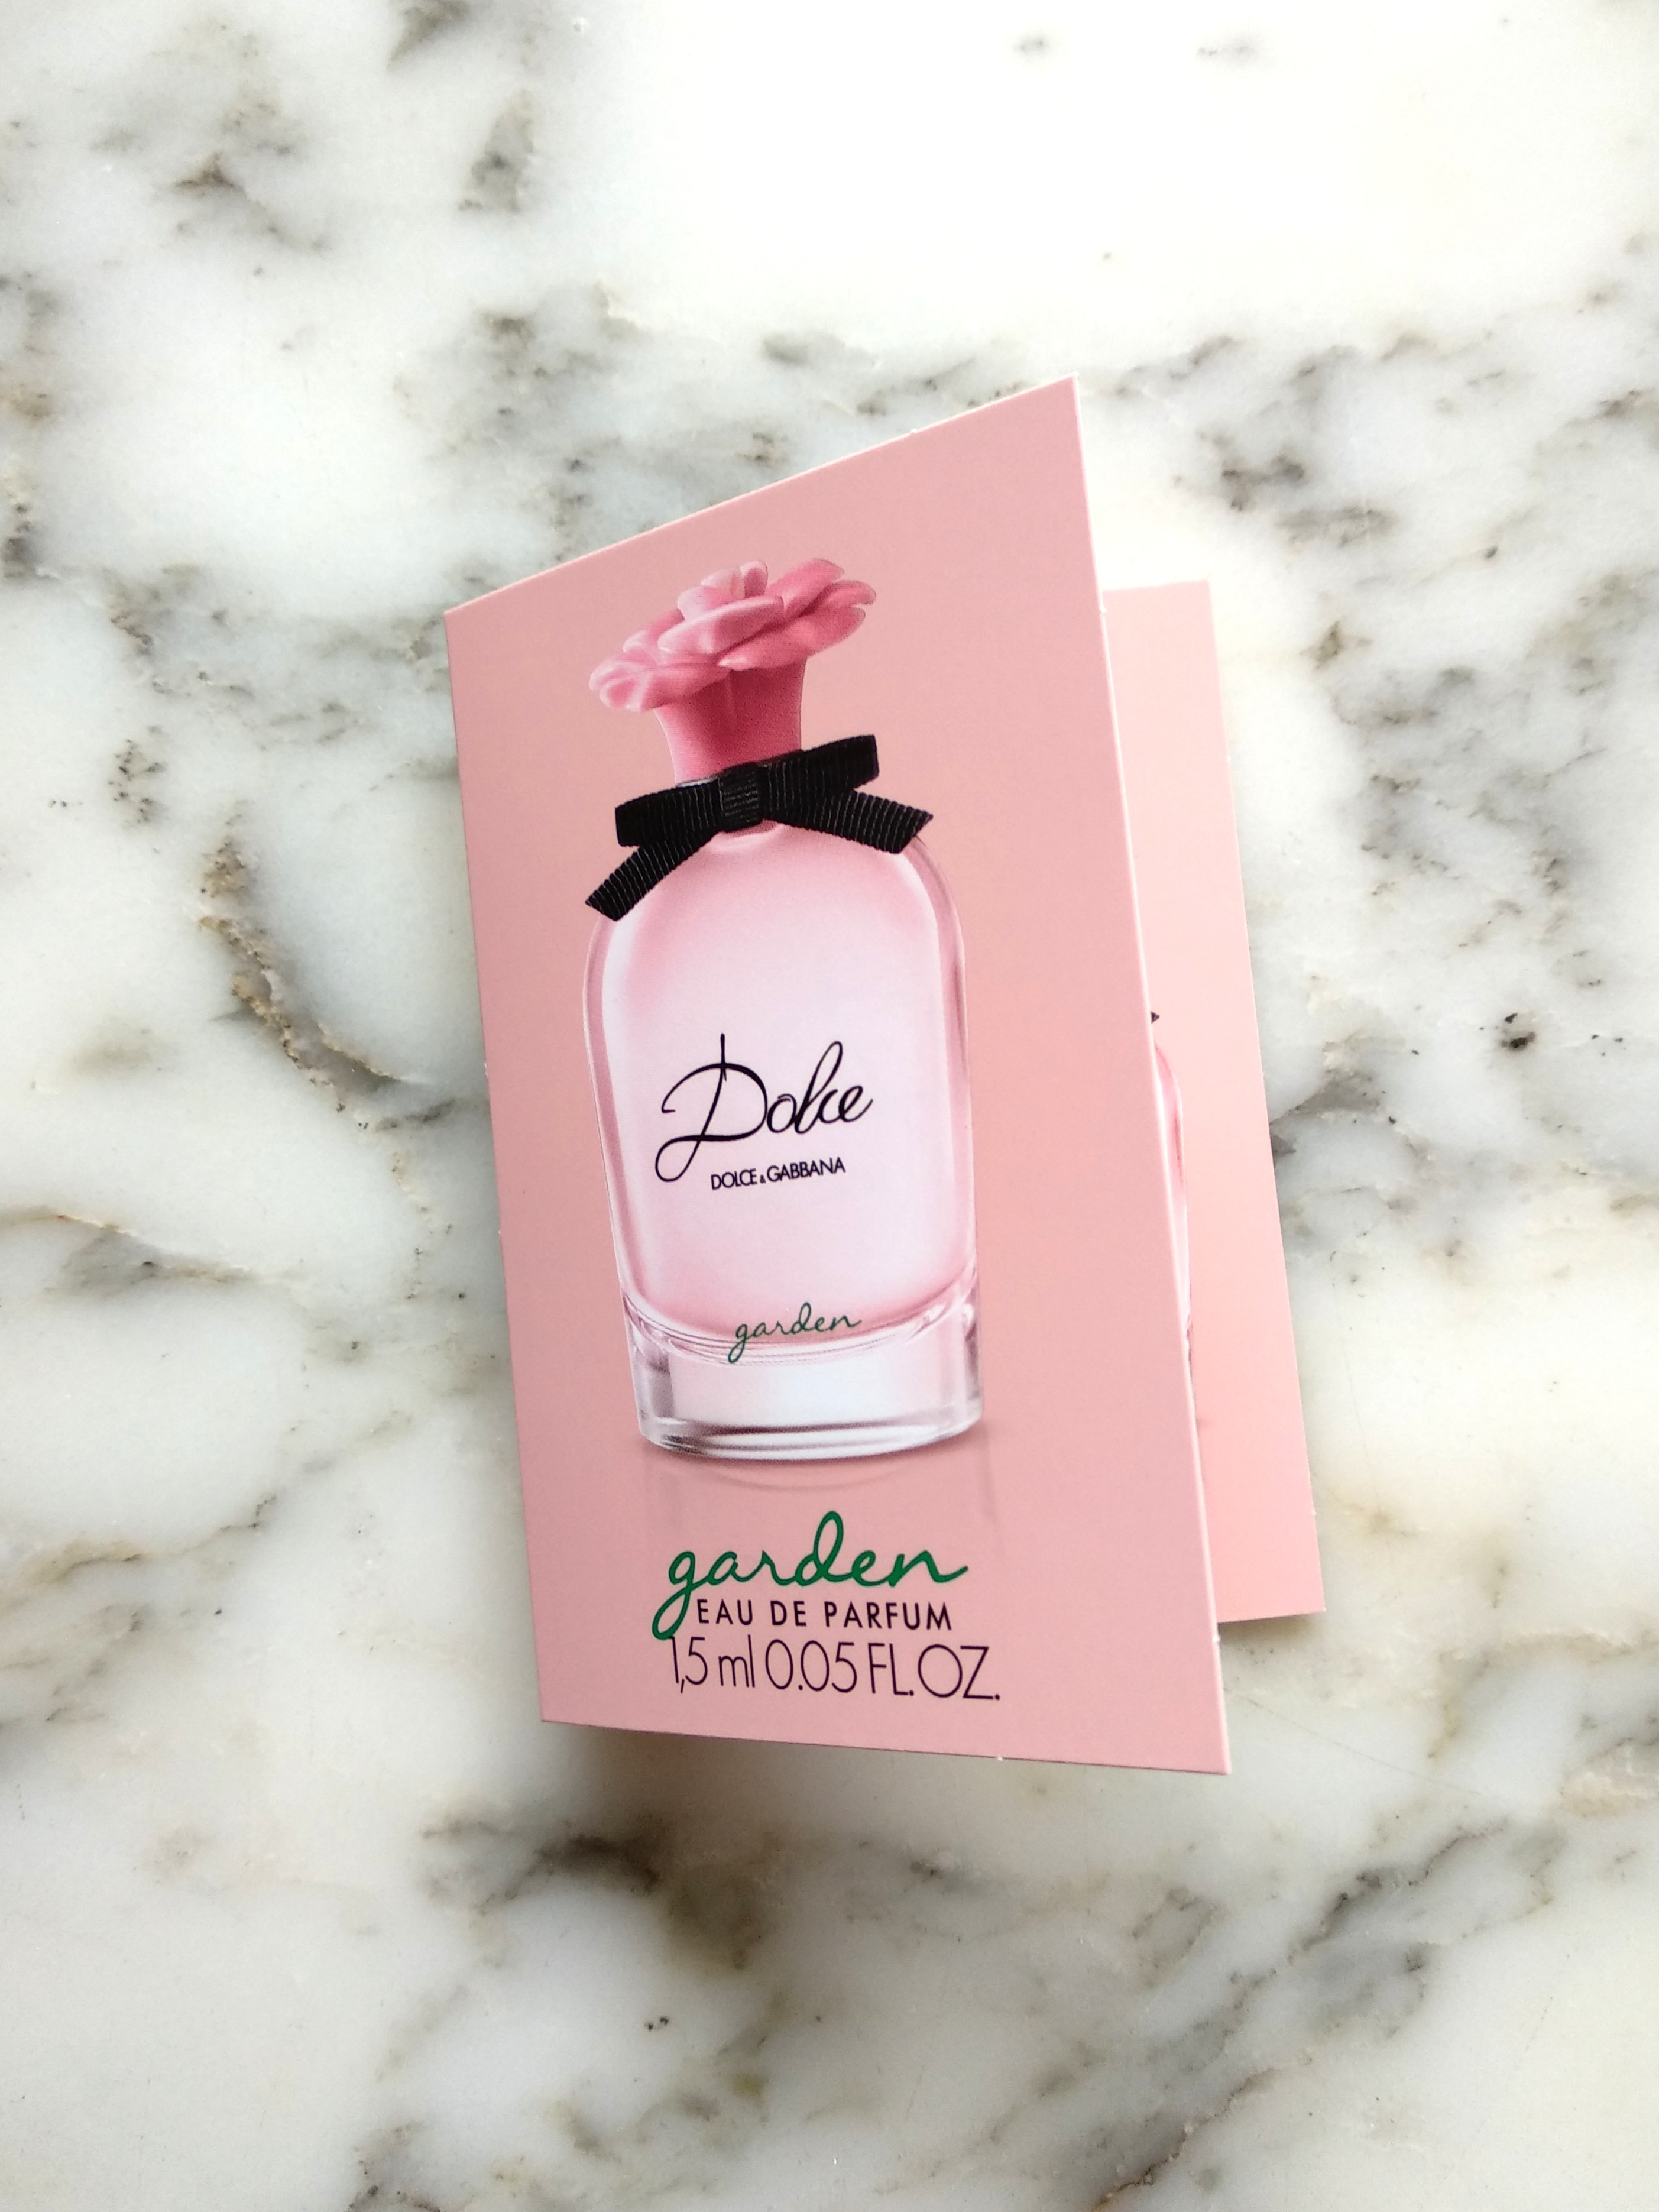 D&G,Dolce & Gabbana Garden EDP 1.5 ml